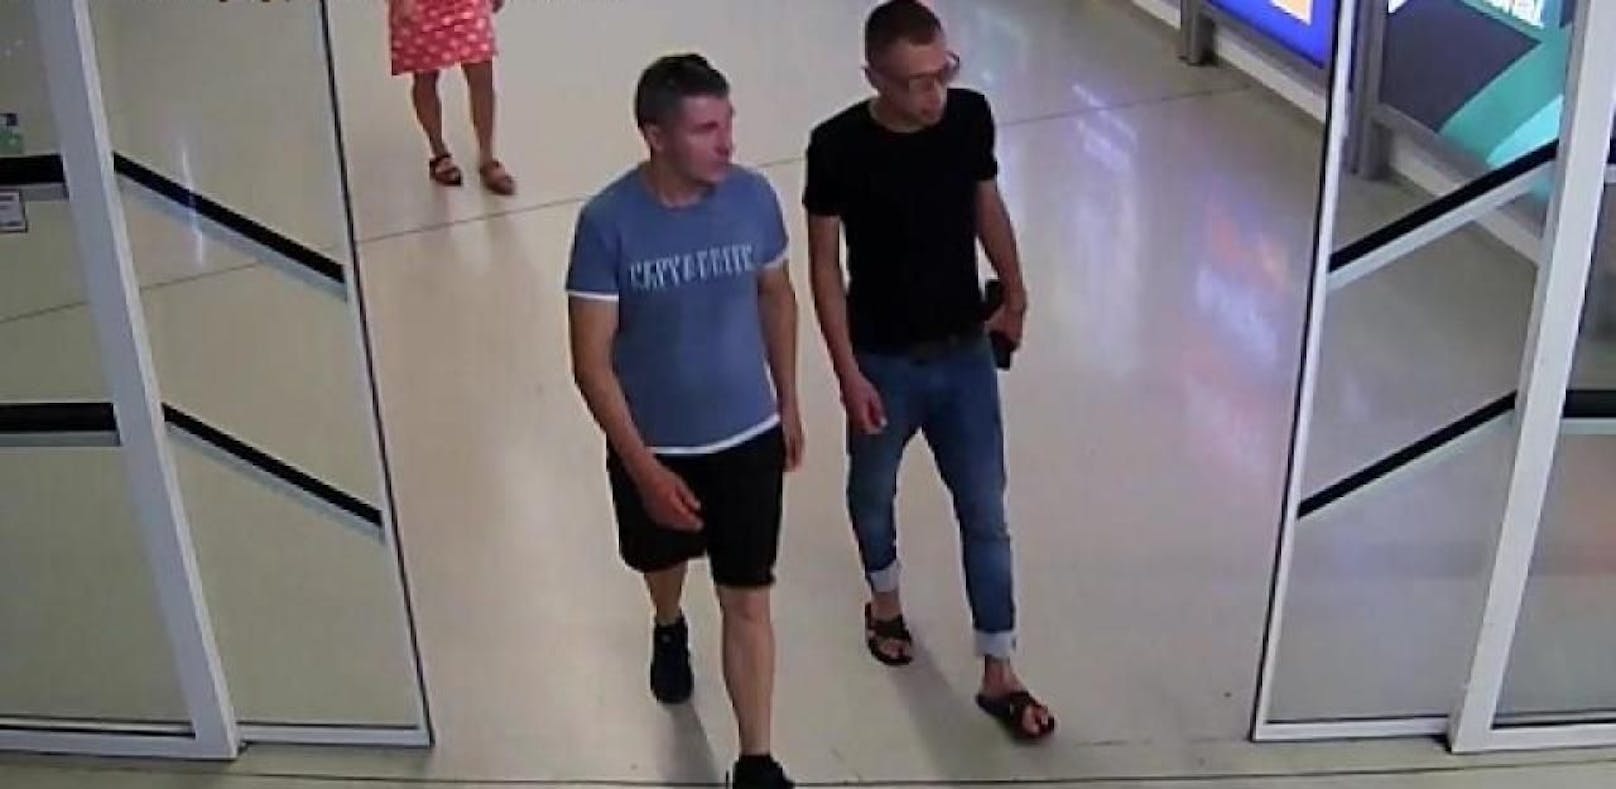 Die beiden Verdächtigen wurden am Flughafen Wien gefilmt.